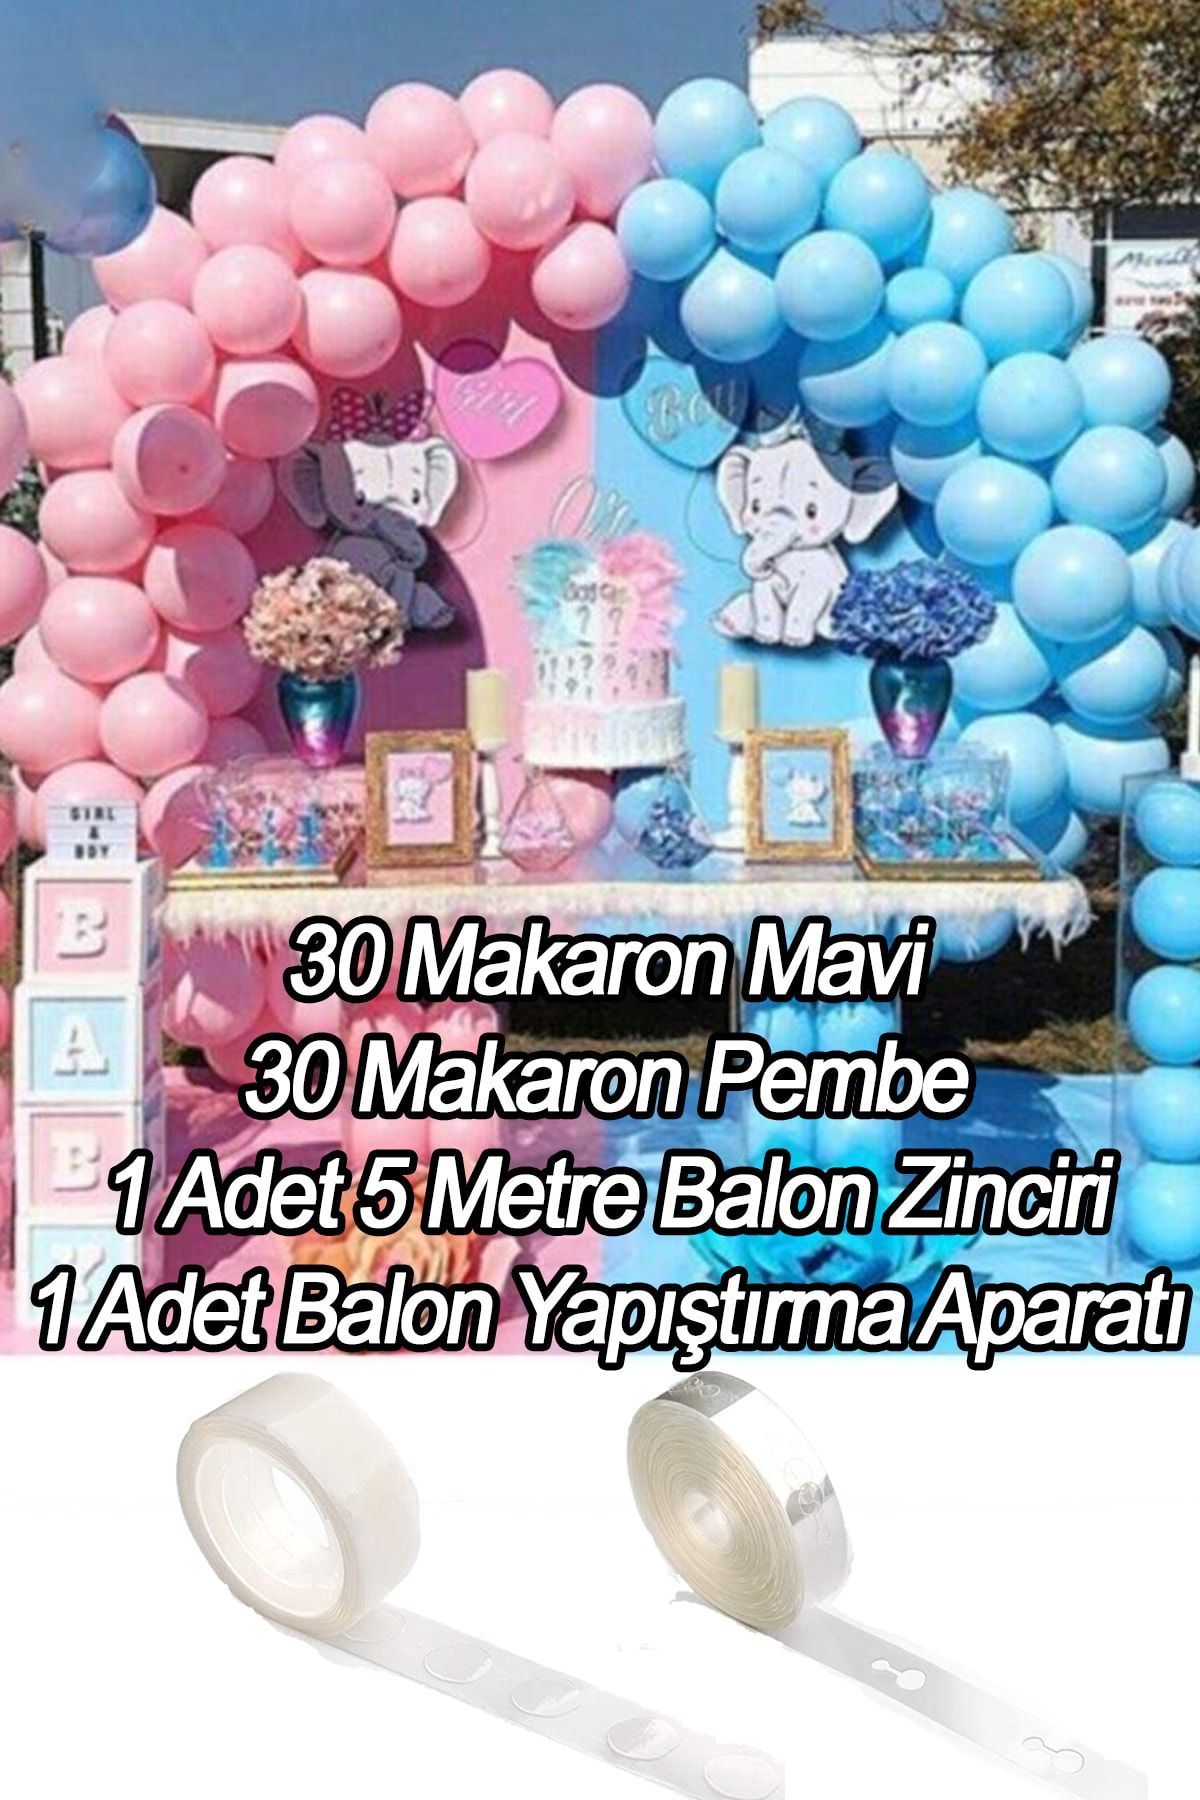 Parti Dolabı Cinsiyet Partisi Balon Zinciri Süsleme (30 Makaron Mavi, 30 Pembe Balon, Balon Yapıştırma + Zincir)